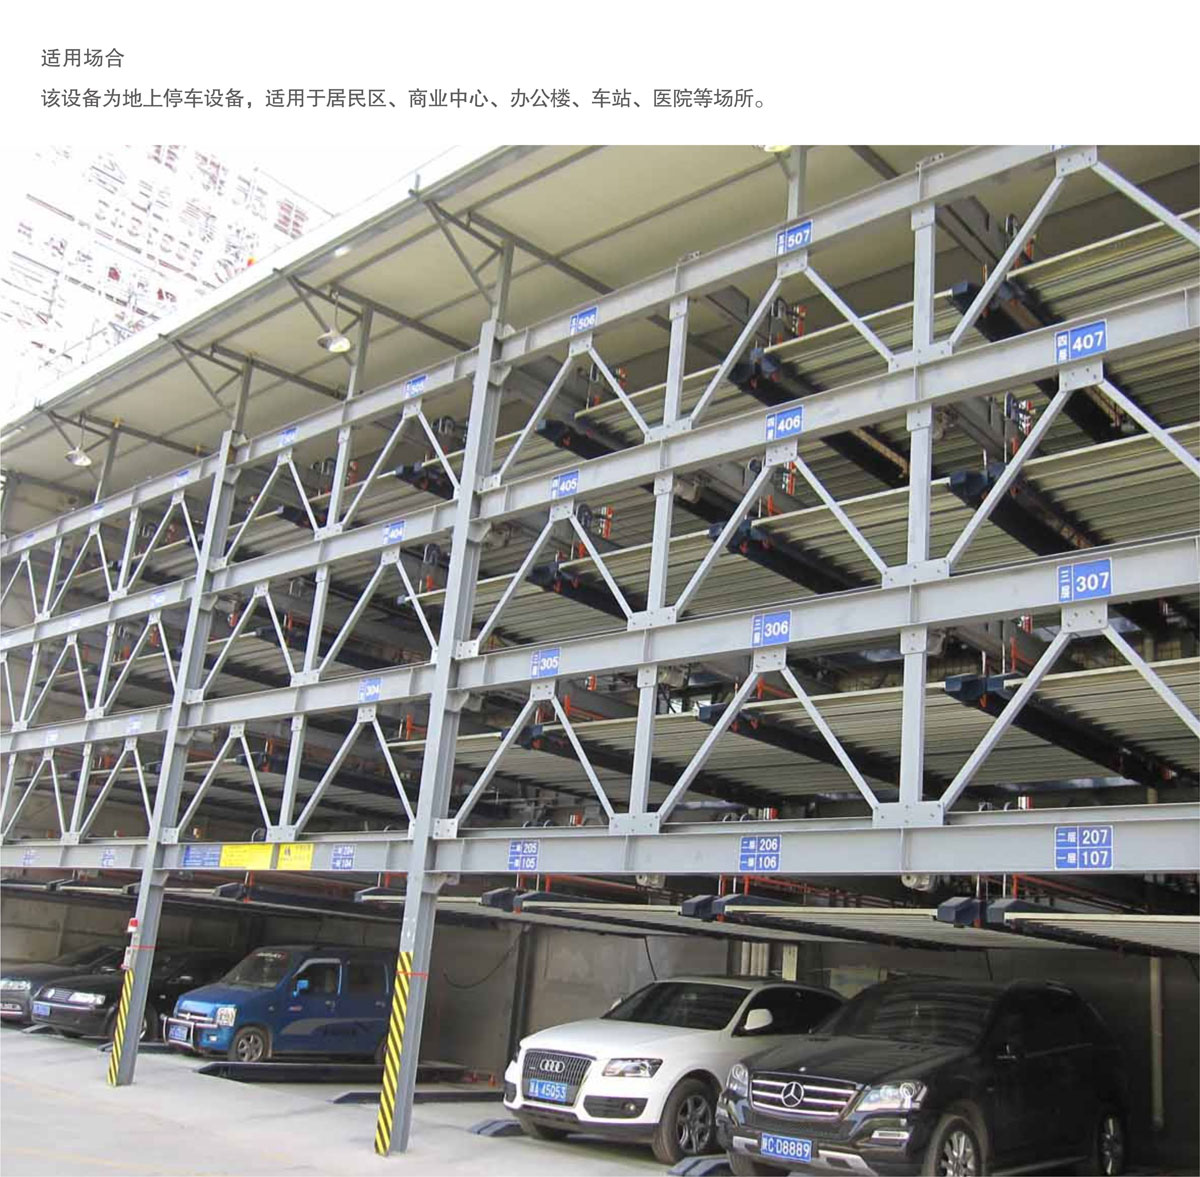 09四至六層PSH4-6升降橫移機械式停車設備適用場合.jpg